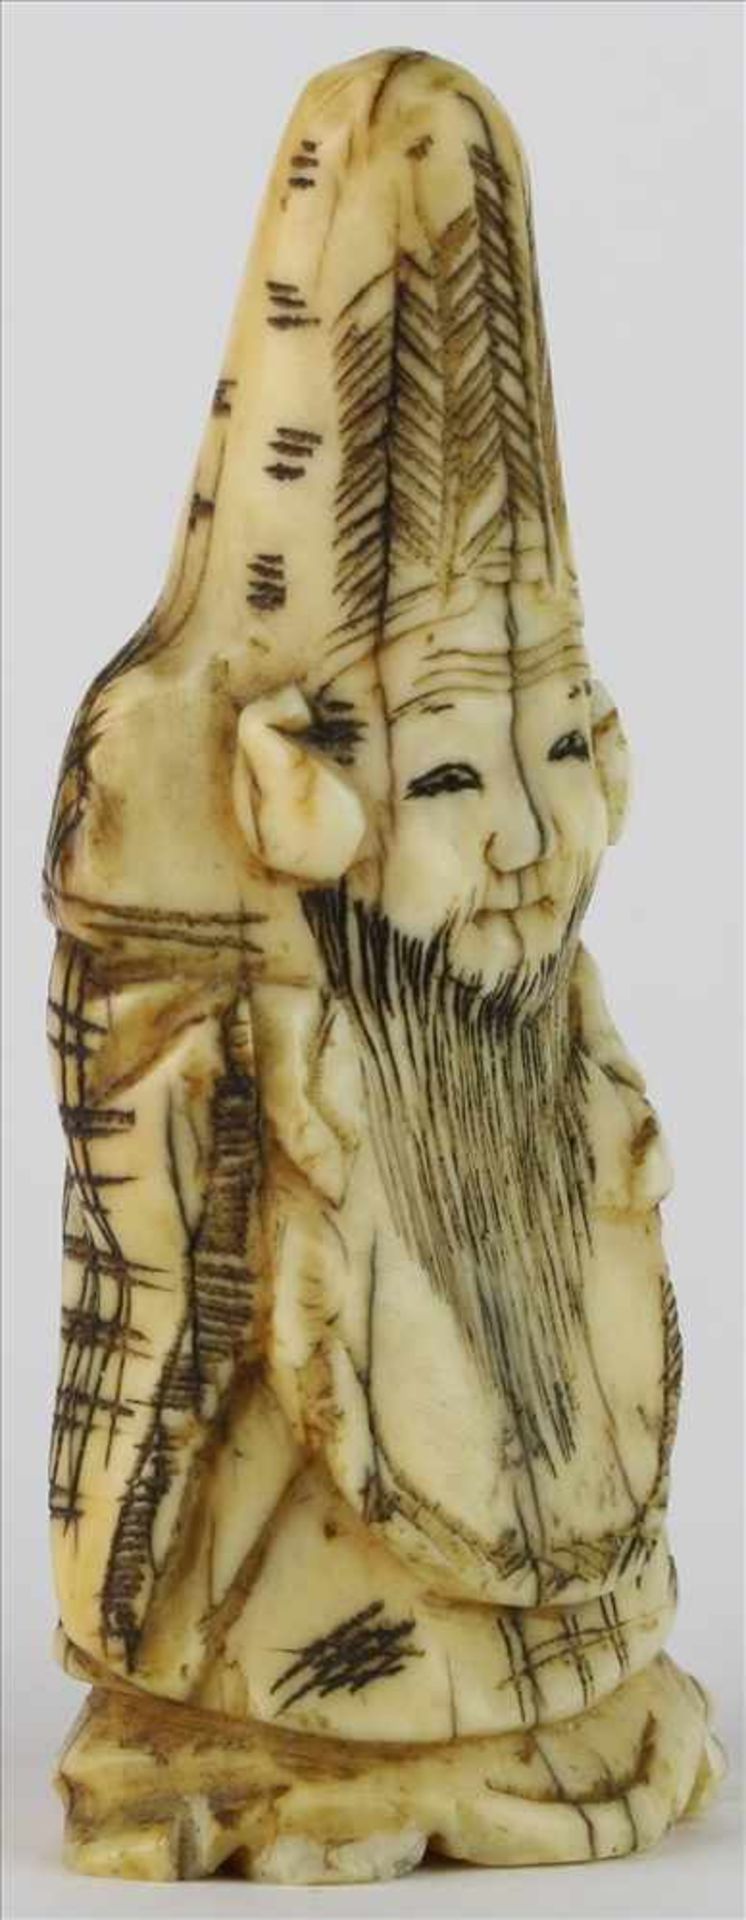 NetsukeJapan, späte Meiji-Zeit. Stehender Weiser. Elfenbein geschnitzt. Höhe ca. 5,5 cm. - Image 2 of 5